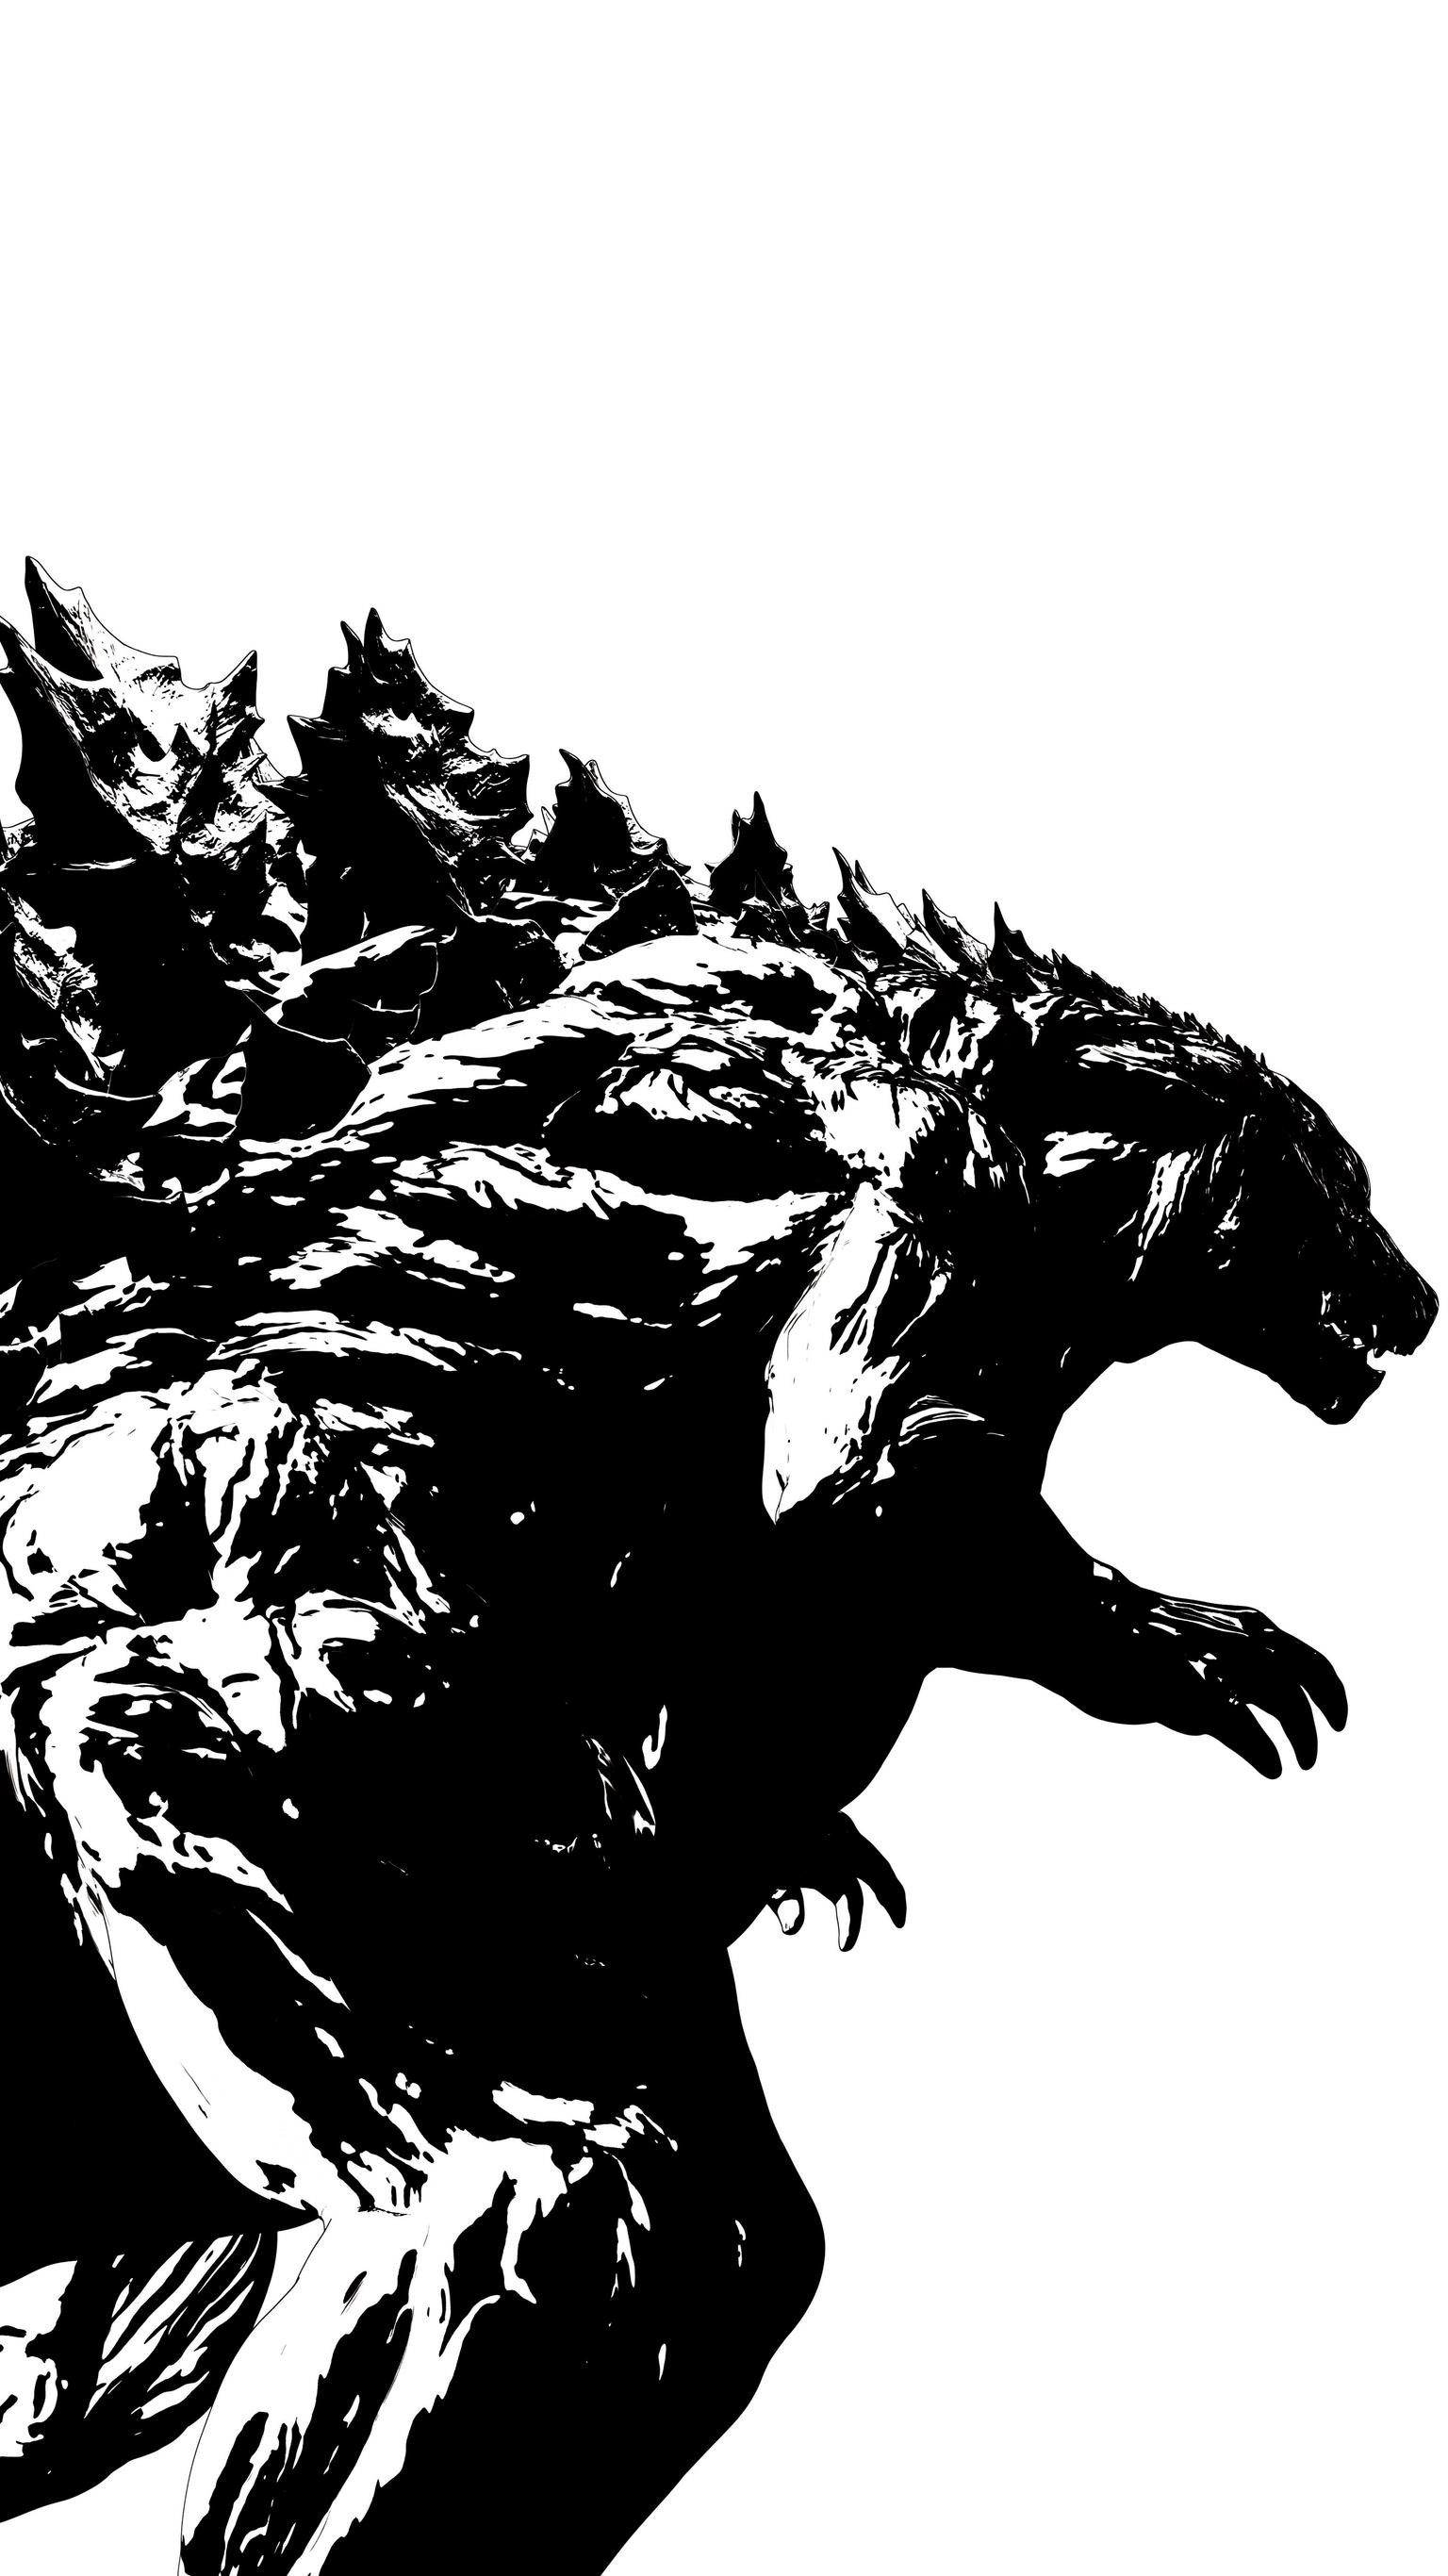 godzilla fondo de pantalla para iphone,hombre lobo,personaje de ficción,criatura mítica,ilustración,oso grizzly